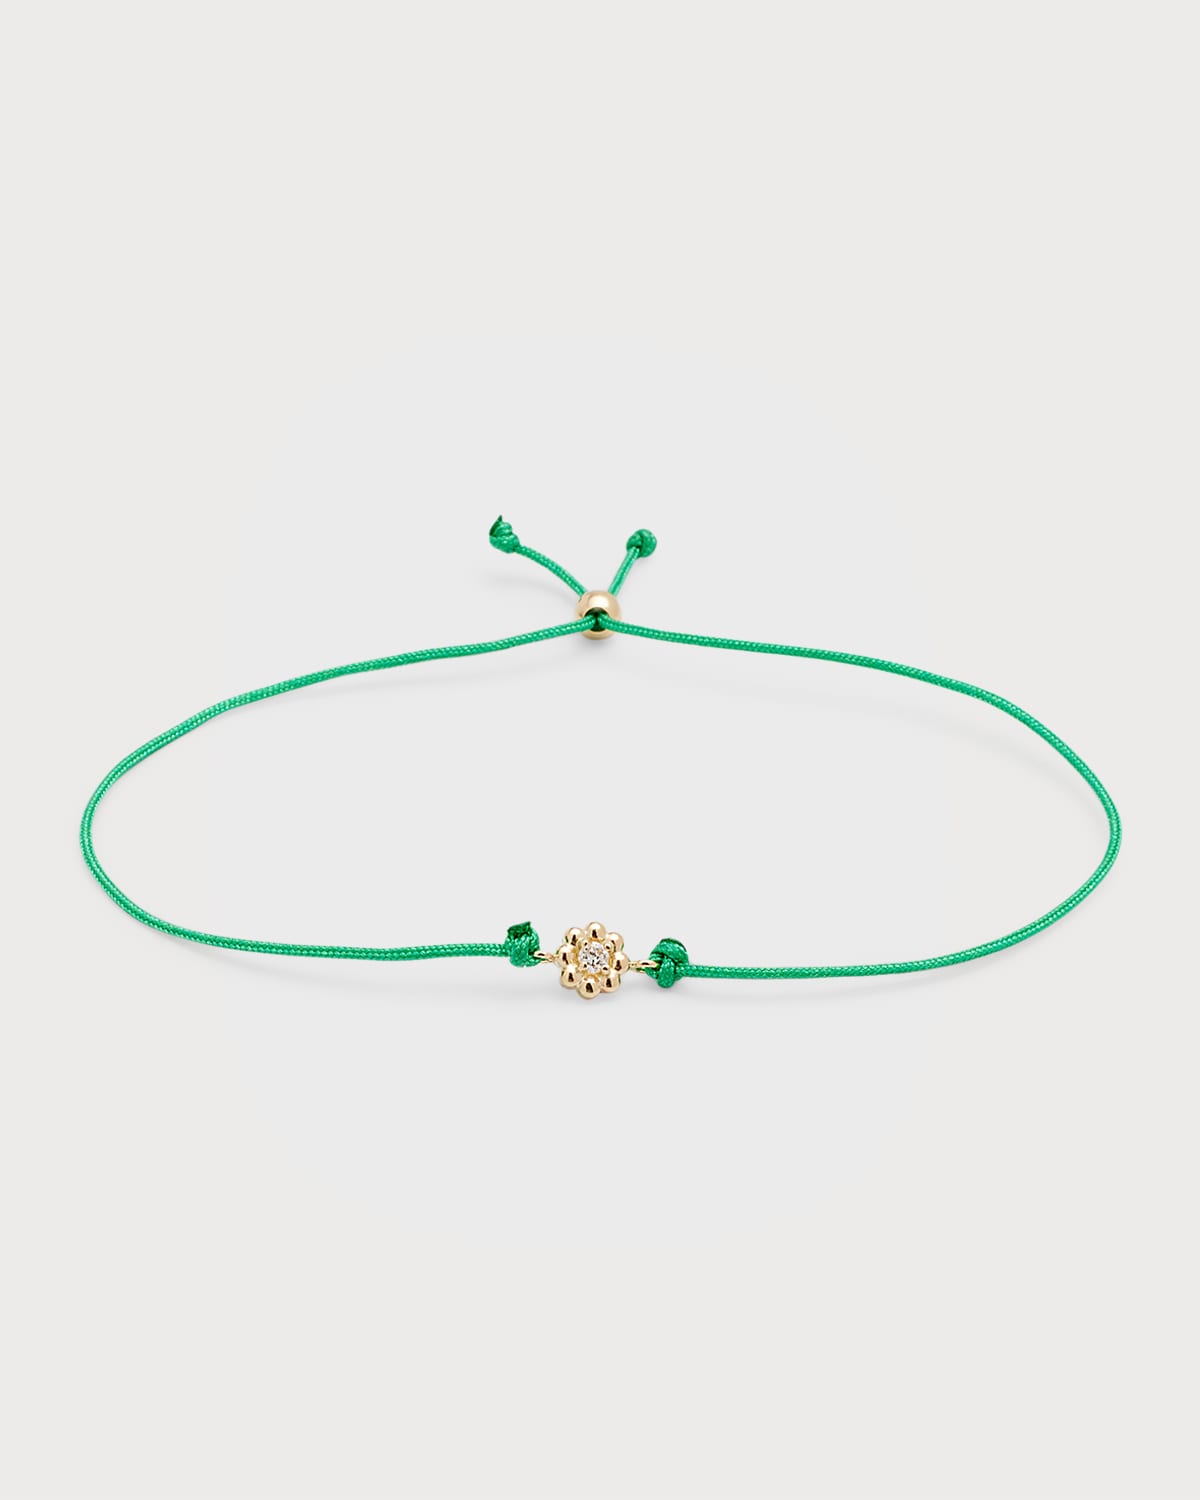 Poppy Finch 14k Gold Diamond Daisy Cord Bolo Bracelet In Emerald